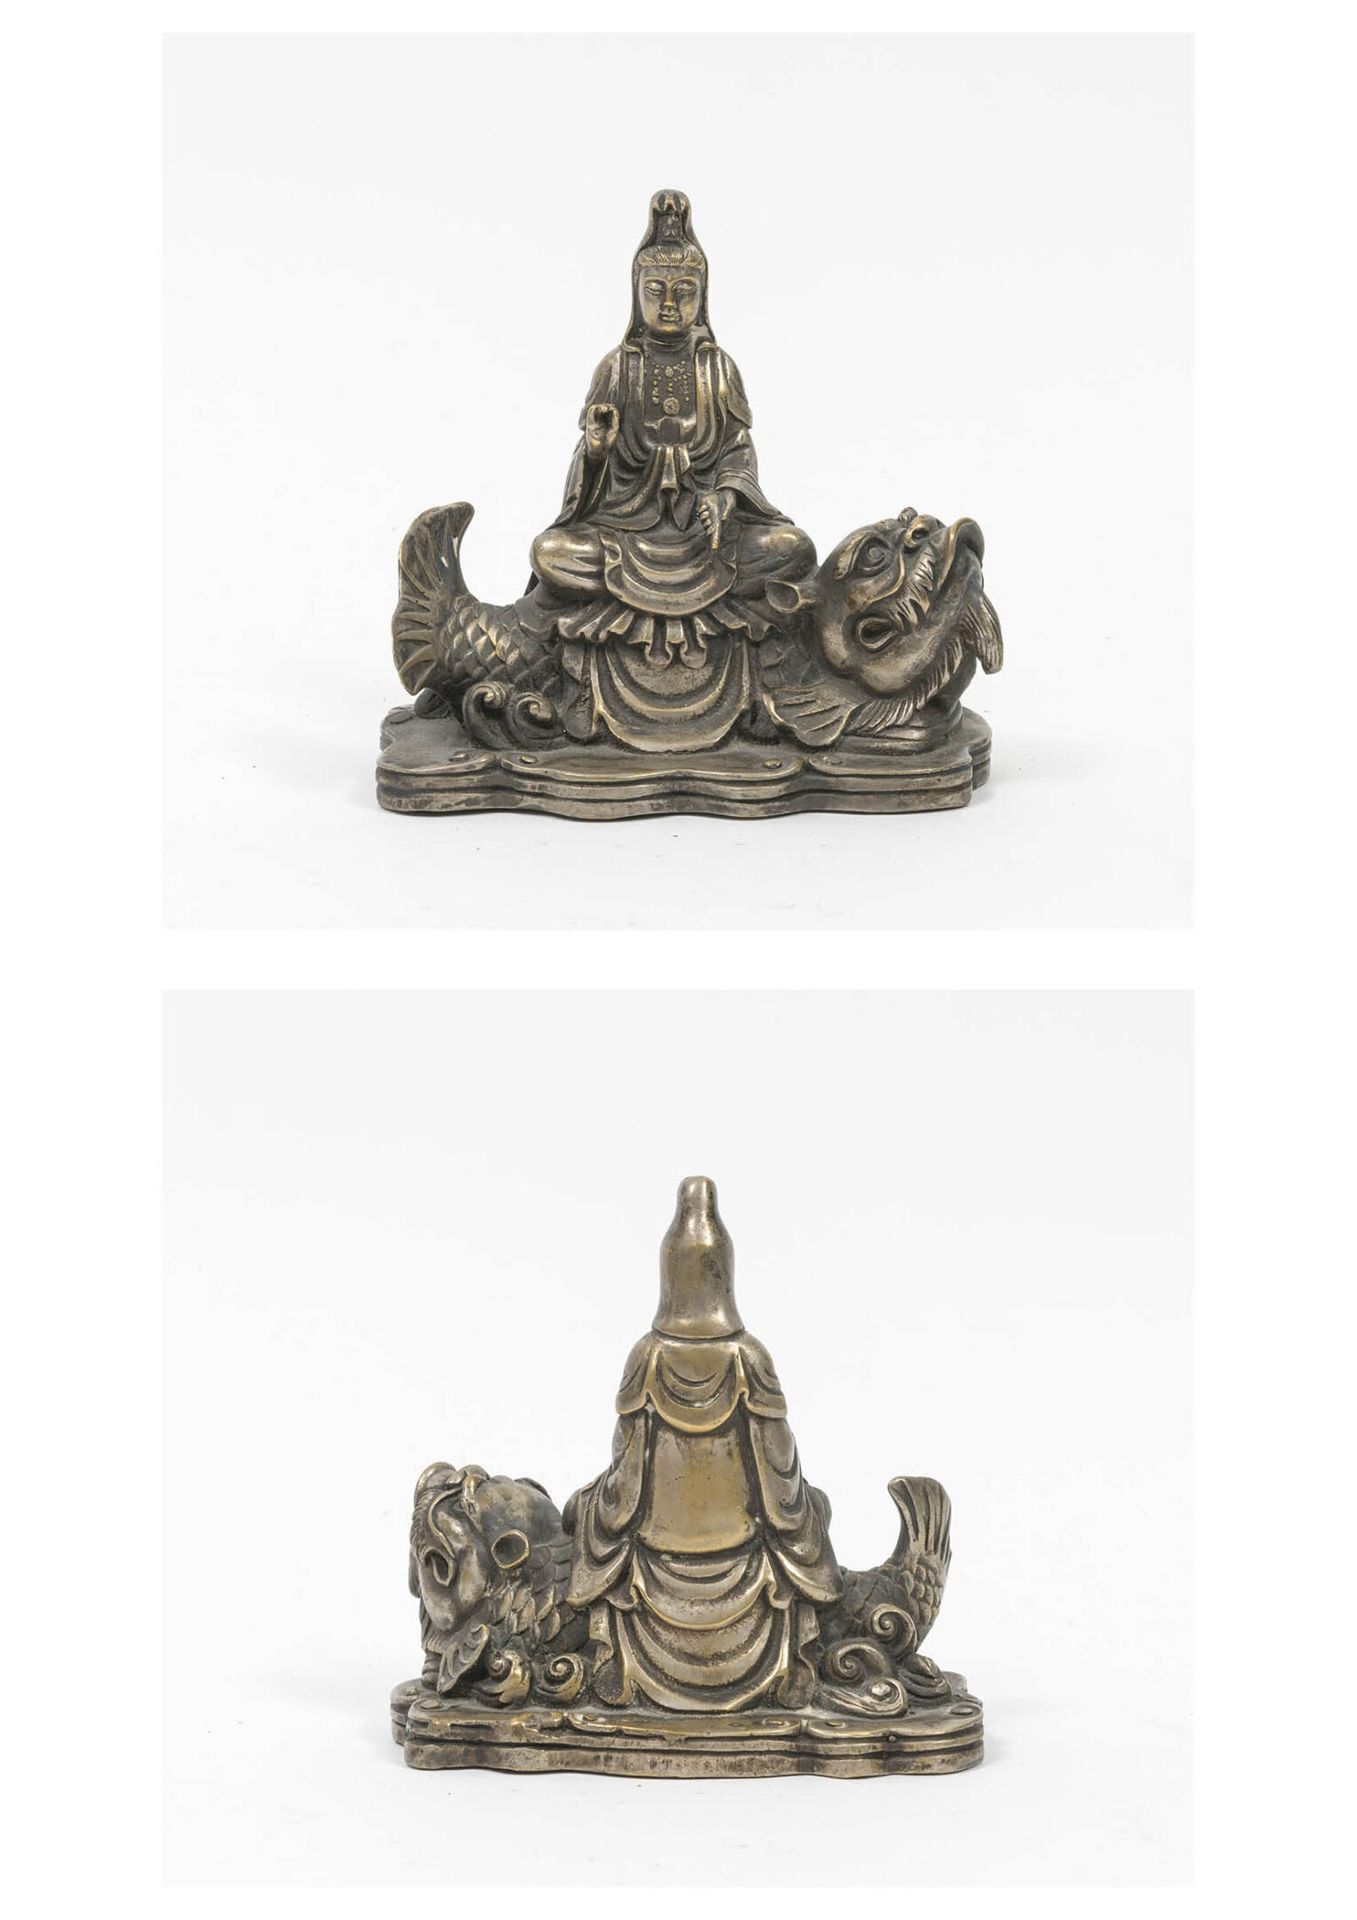 CHINE, XXème siècle 坐在鱼上的佛陀在一个有叶的底座上。

镀银金属雕像，有镀金的痕迹。

H.12厘米。- 宽度：12厘米。

磨损的铜锈。